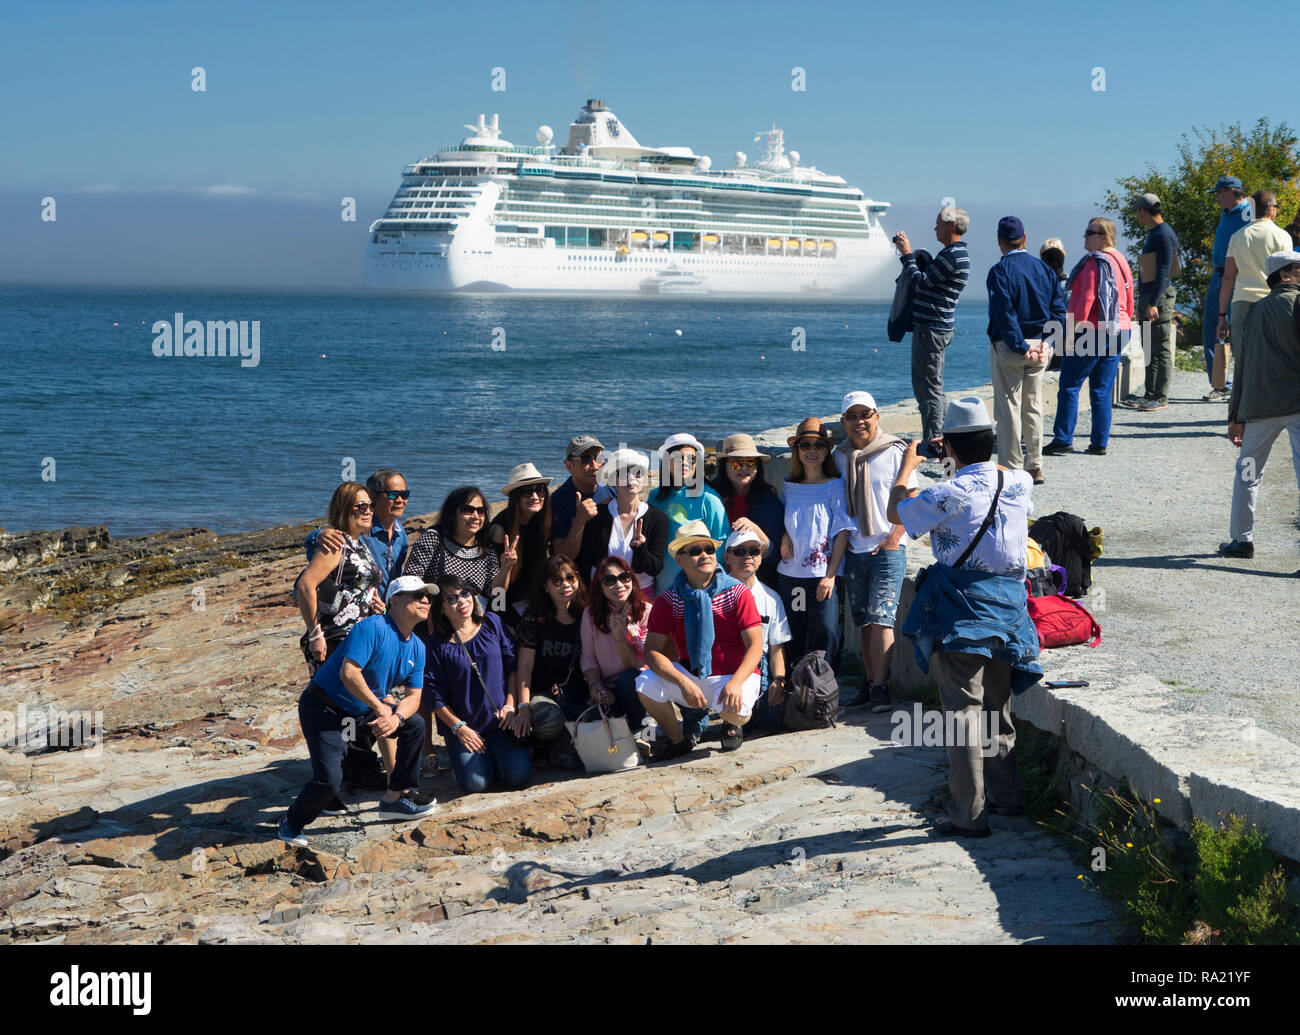 Les touristes asiatiques de prendre une photo de groupe avec un bateau de croisière dans l'arrière-plan, Bar Harbor, Maine, USA. Banque D'Images